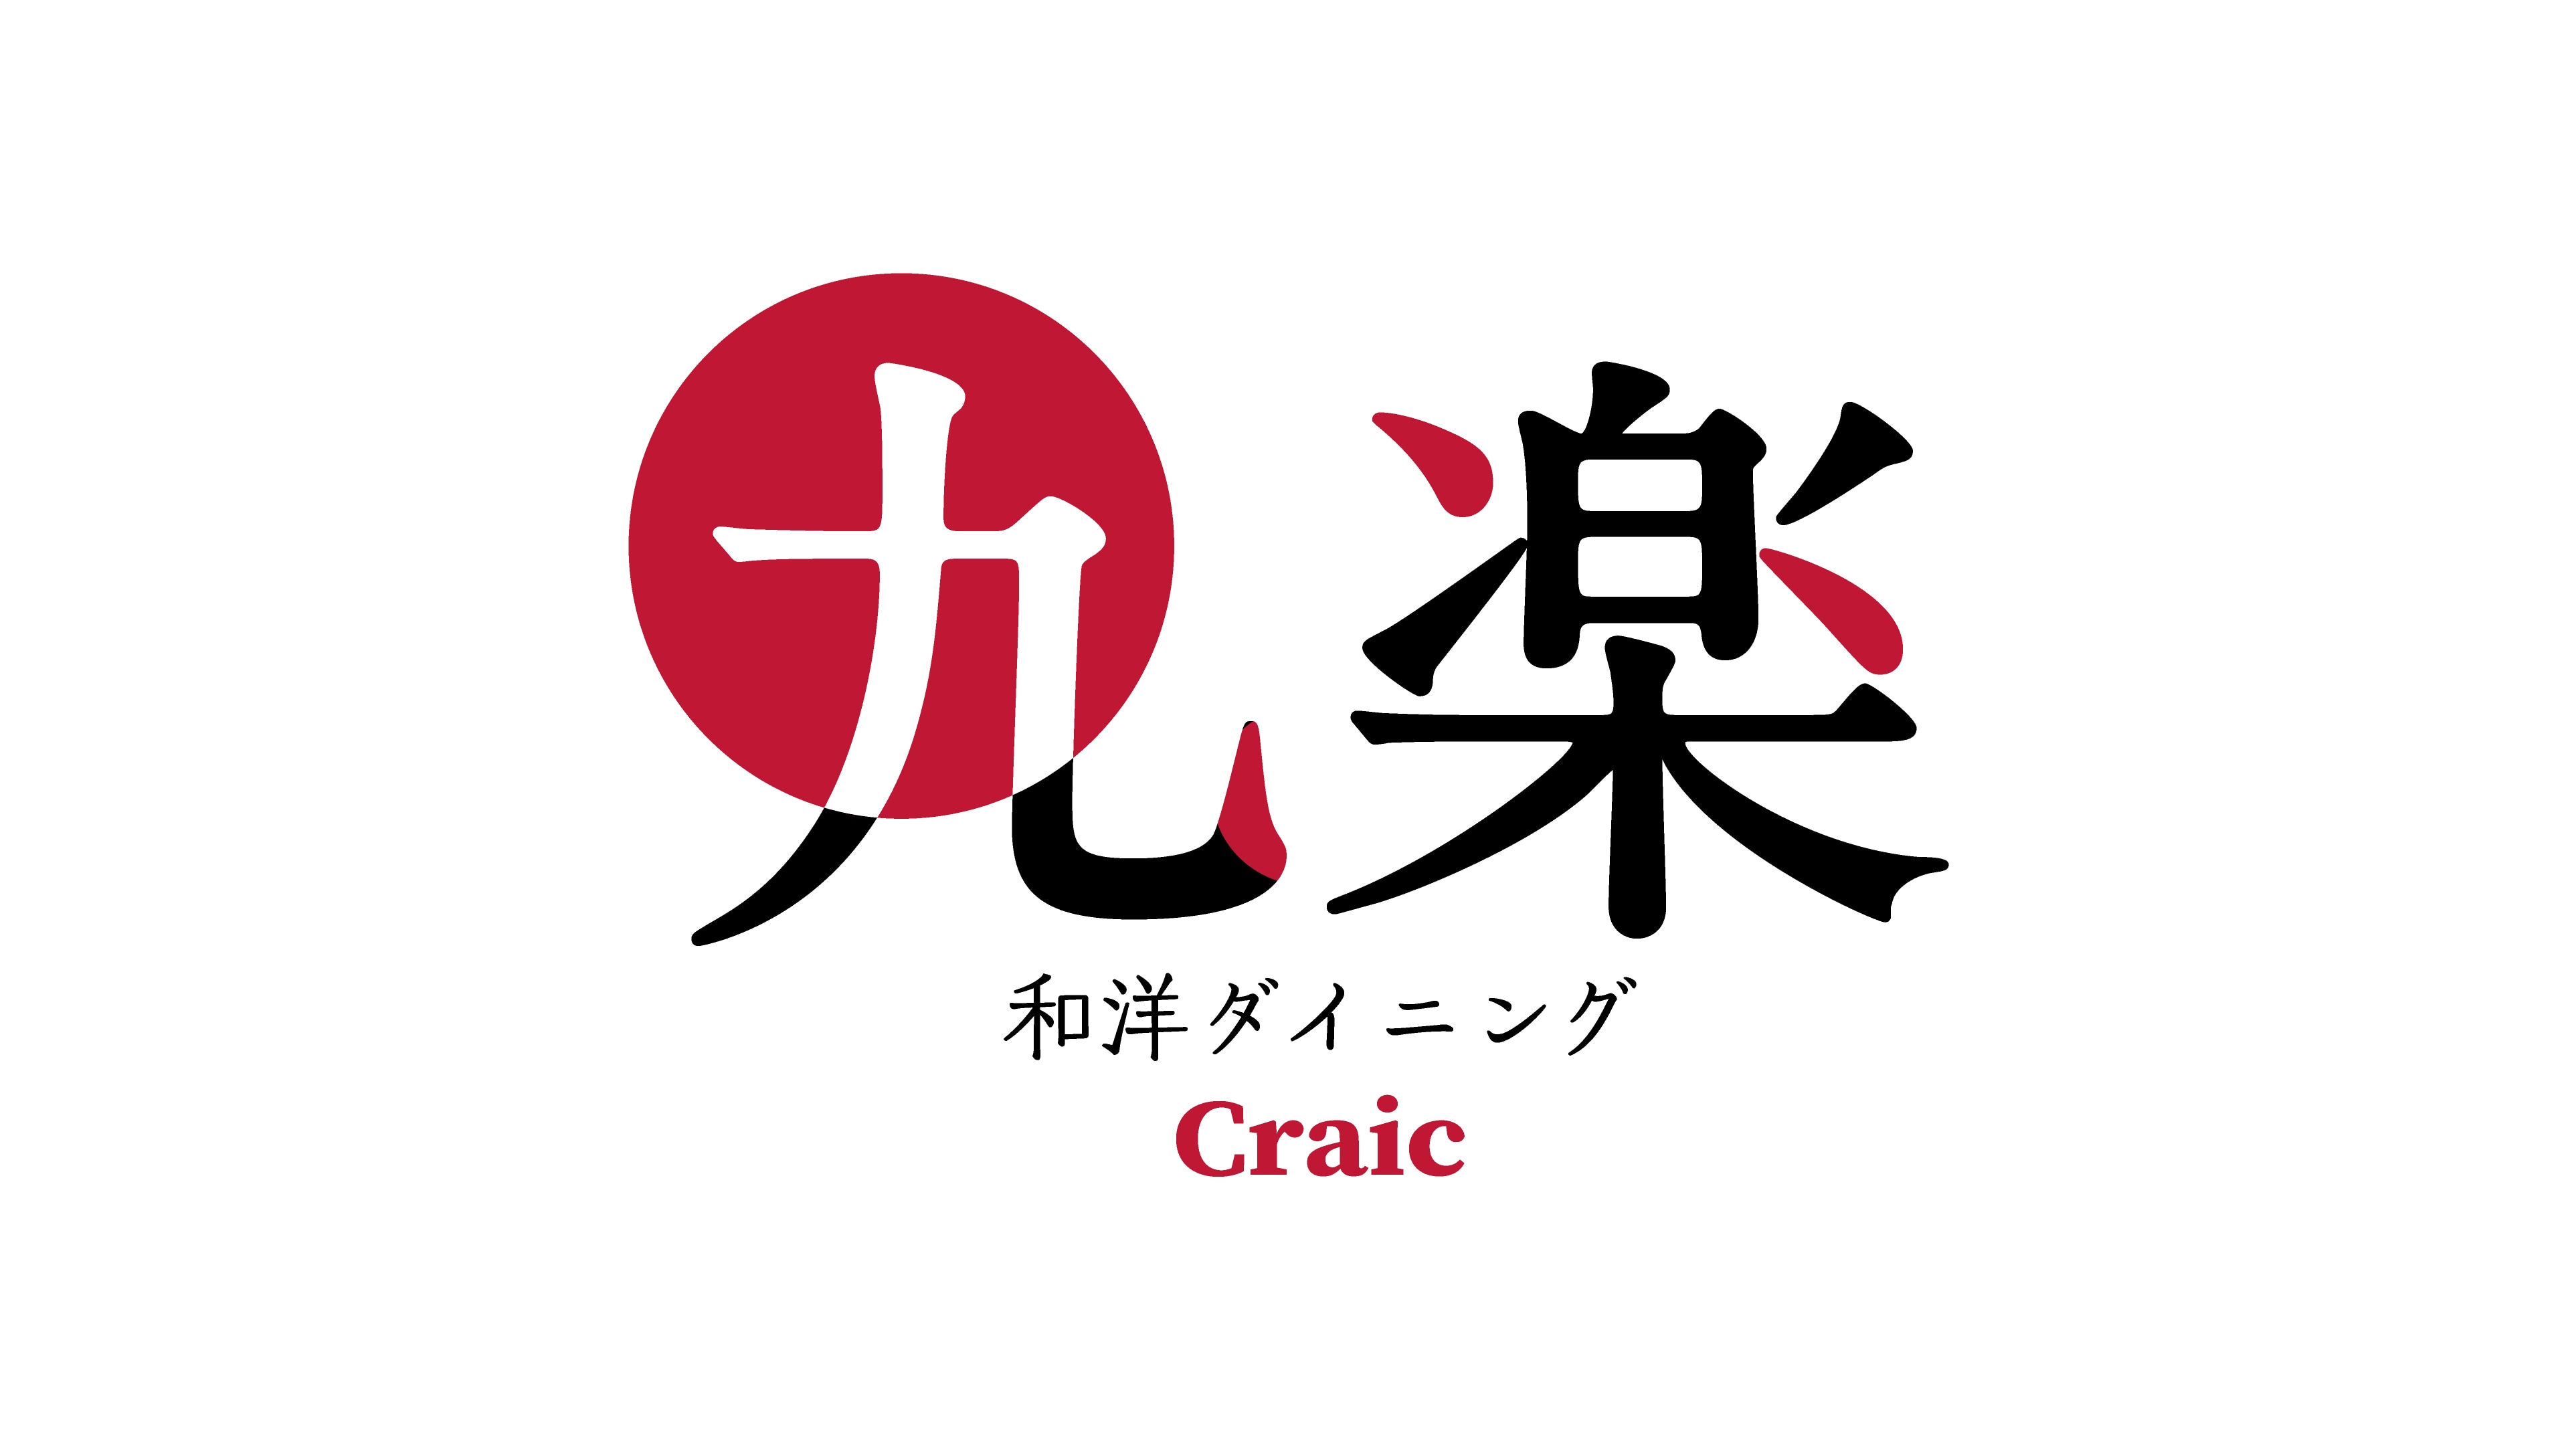 ร้านอาหารญี่ปุ่นและตะวันตก Craic crack